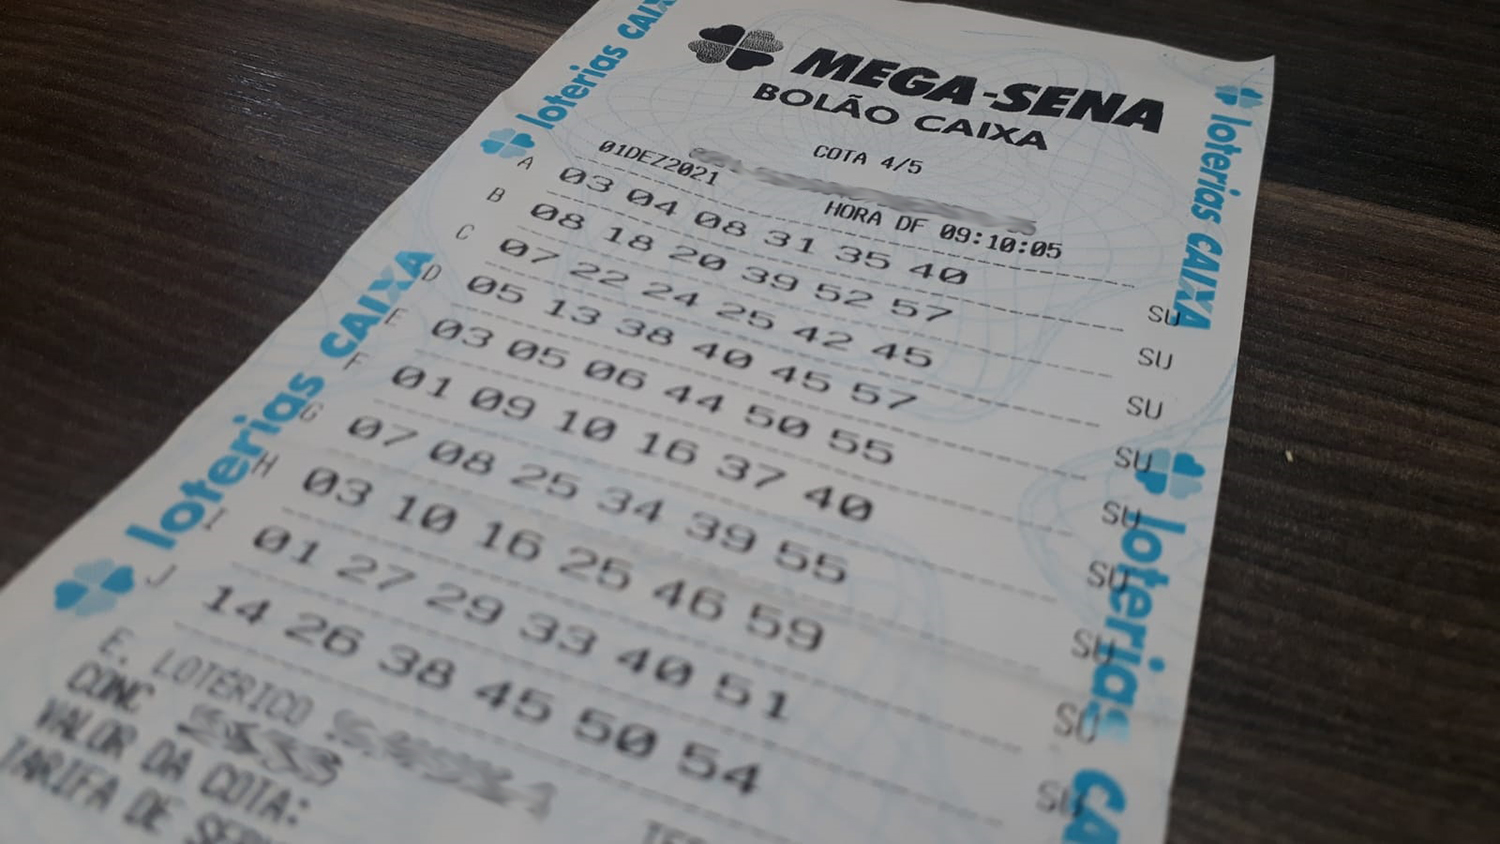 Bolão da Mega-Sena: como funciona o jogo e como apostar